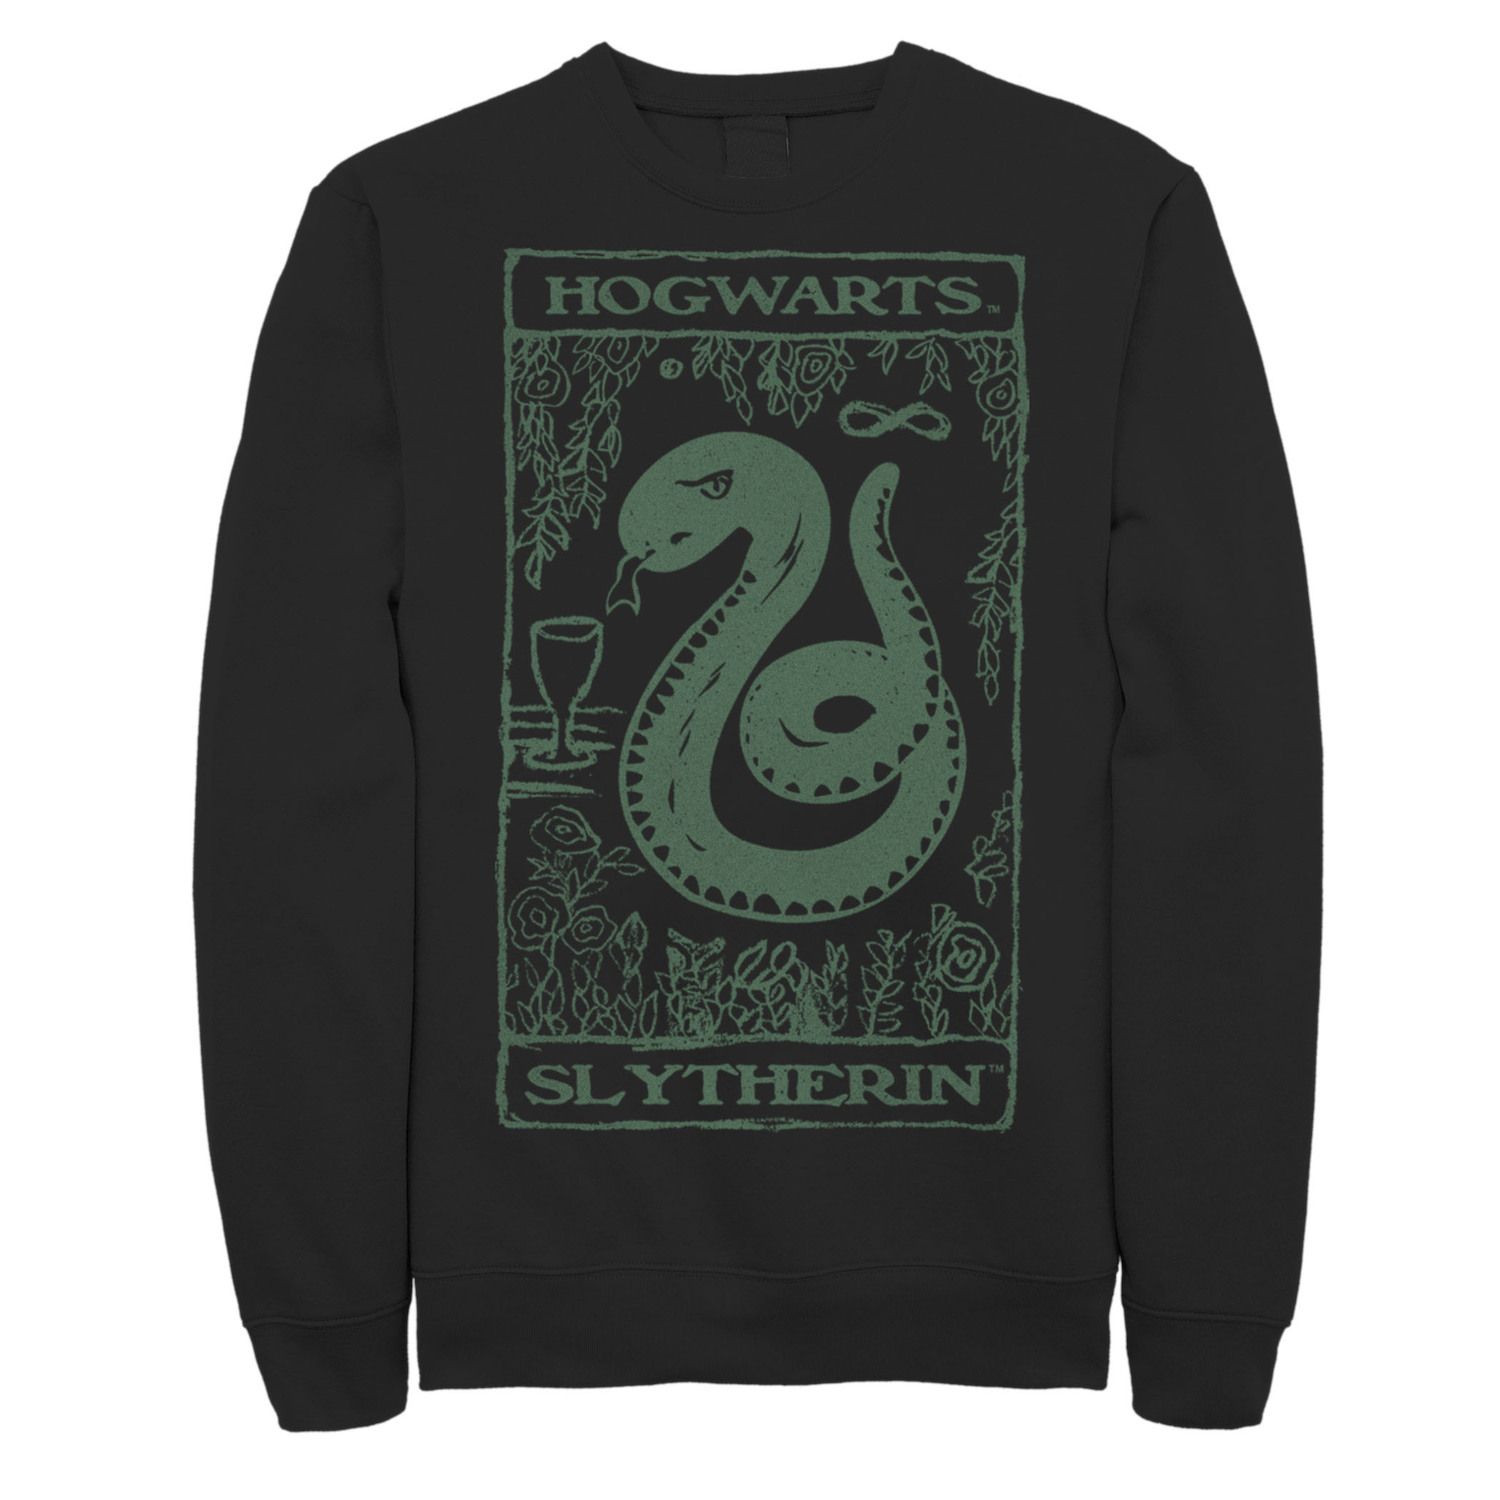 Image for Harry Potter Men's Slytherin Vintage Poster Sweatshirt at Kohl's.